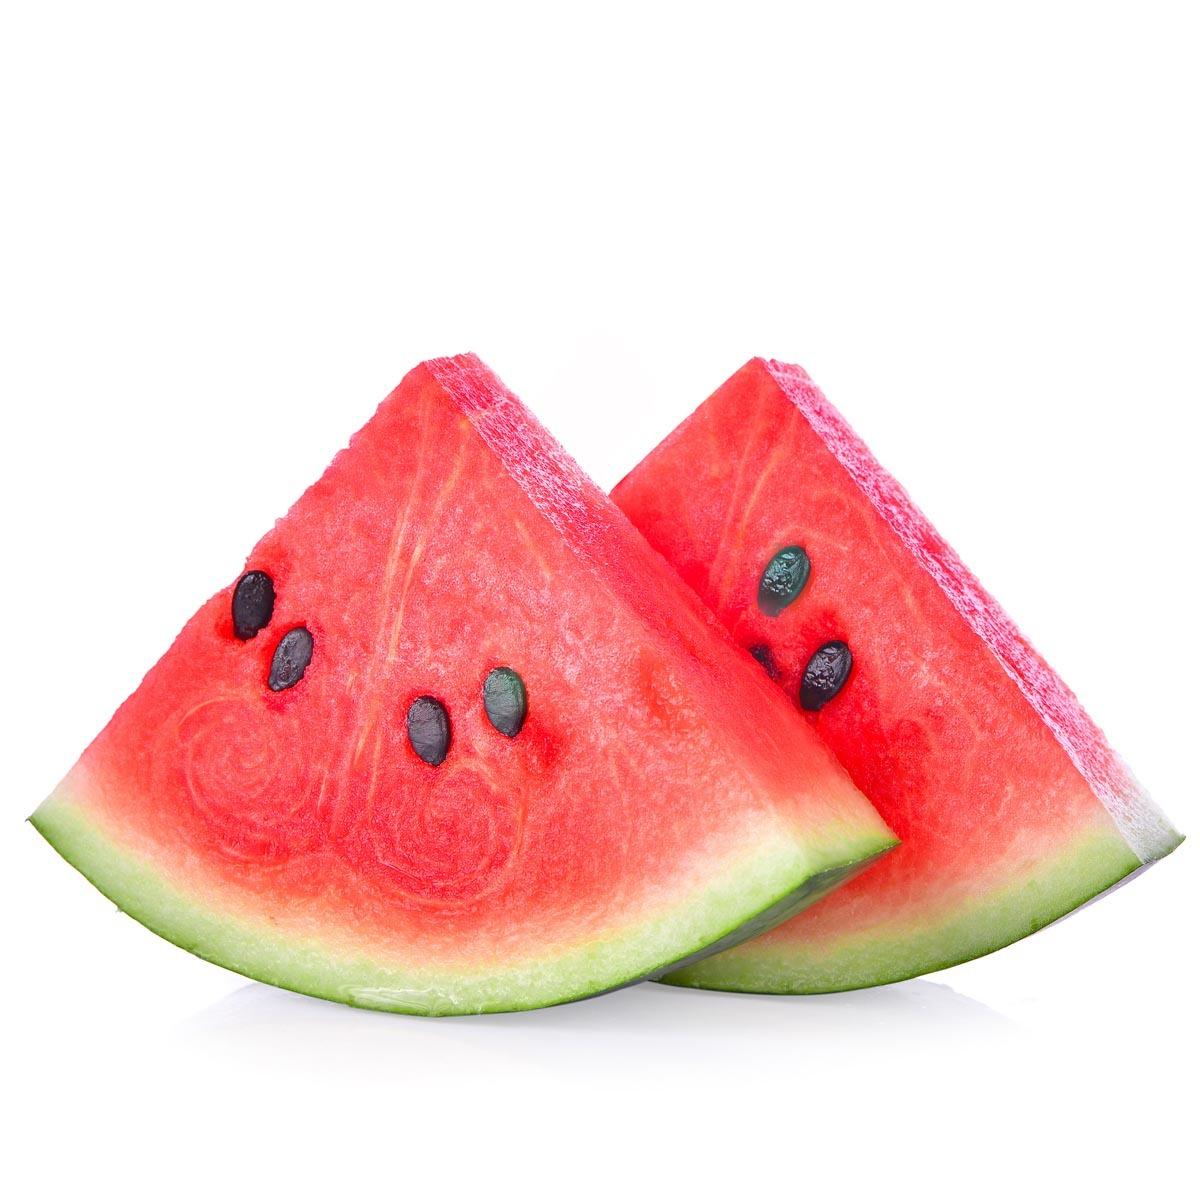 بذور البطيخ: كنز غذائي صغير بفوائد عظيمة!